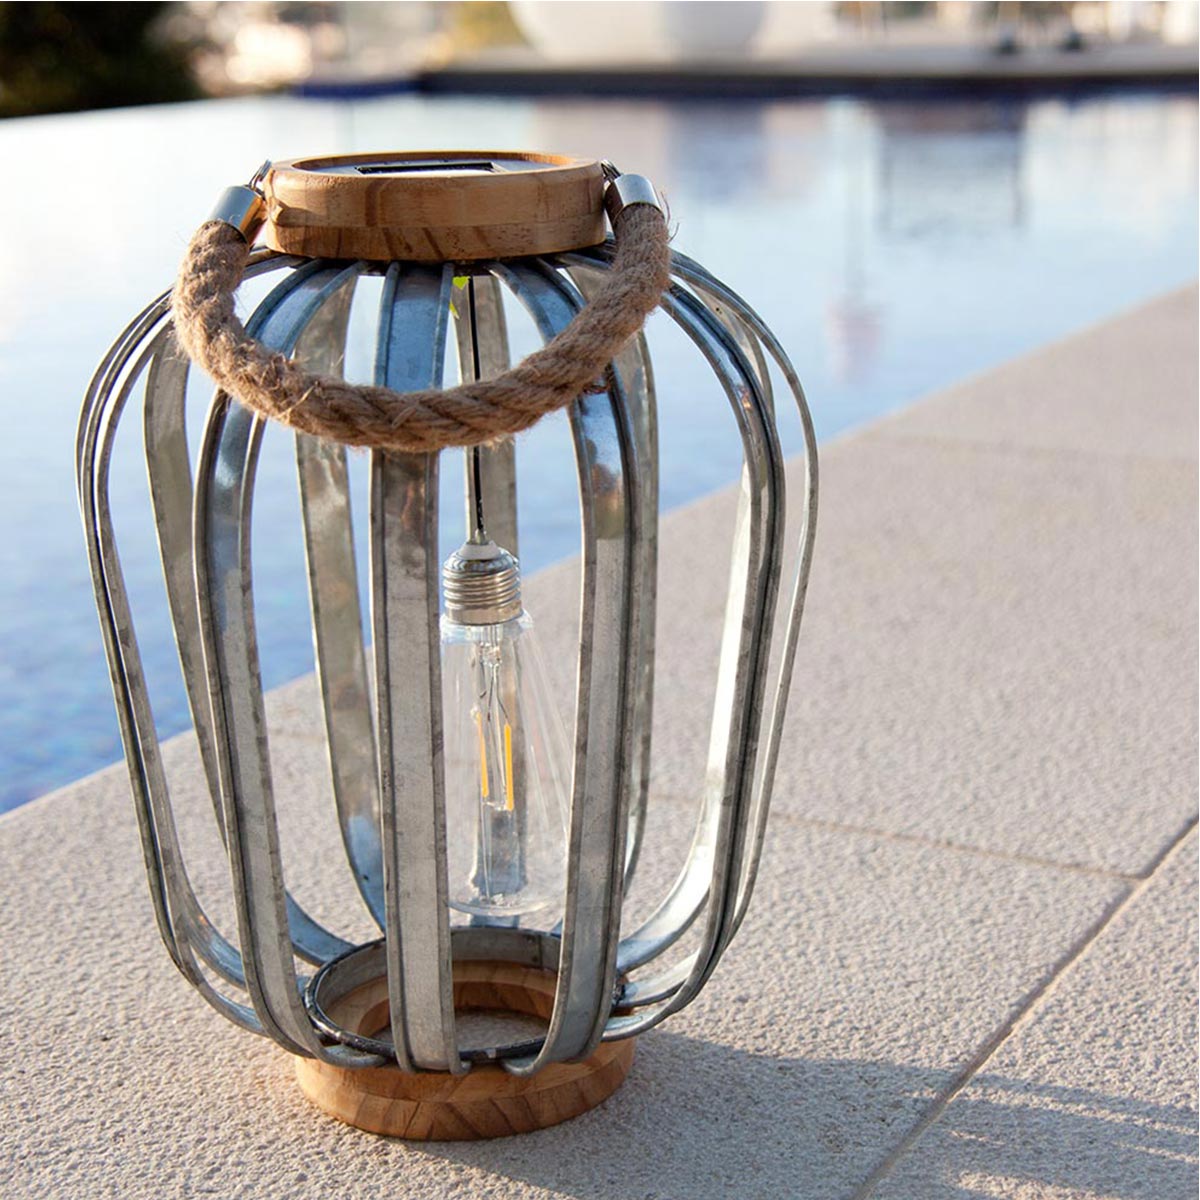 Lanterne solaire bohème en bois et acier galva poignée corde ampoule filament LED blanc chaud JAVA H45cm - REDDECO.com